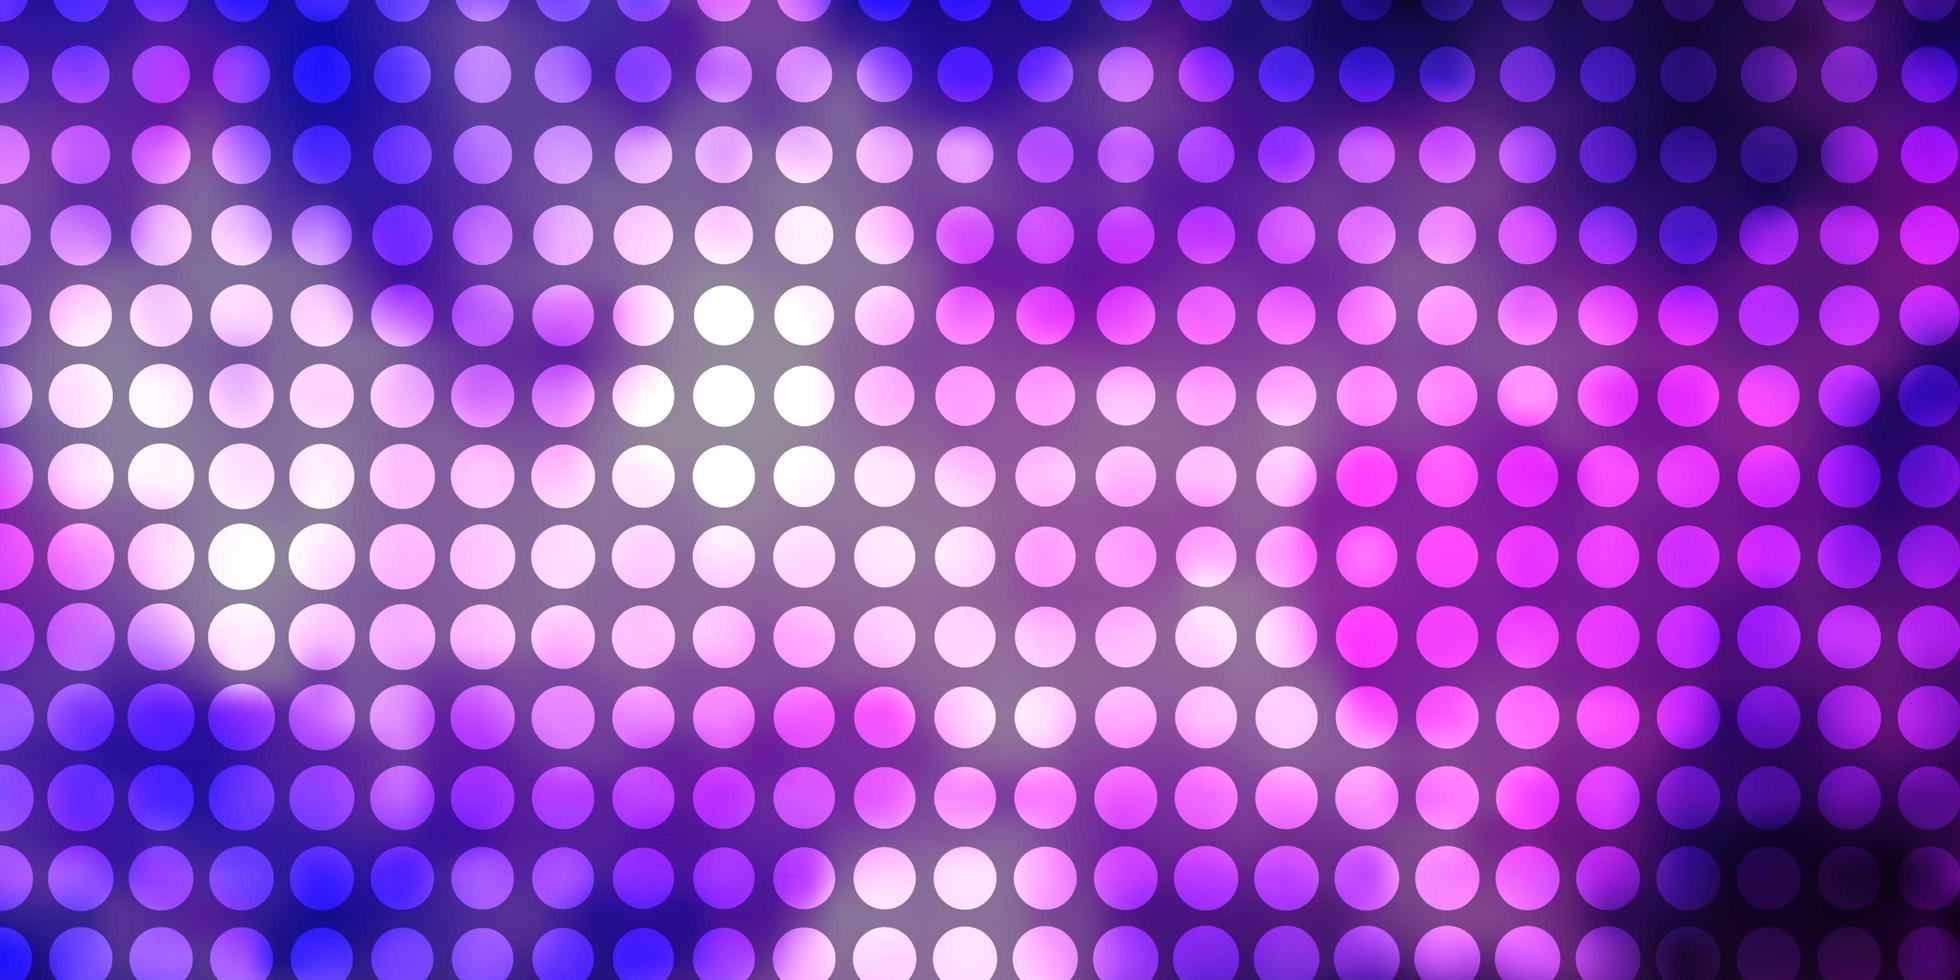 pano de fundo de vetor roxo claro com ilustração de círculos com conjunto de padrão de esferas abstratas coloridas brilhantes para páginas de destino de sites